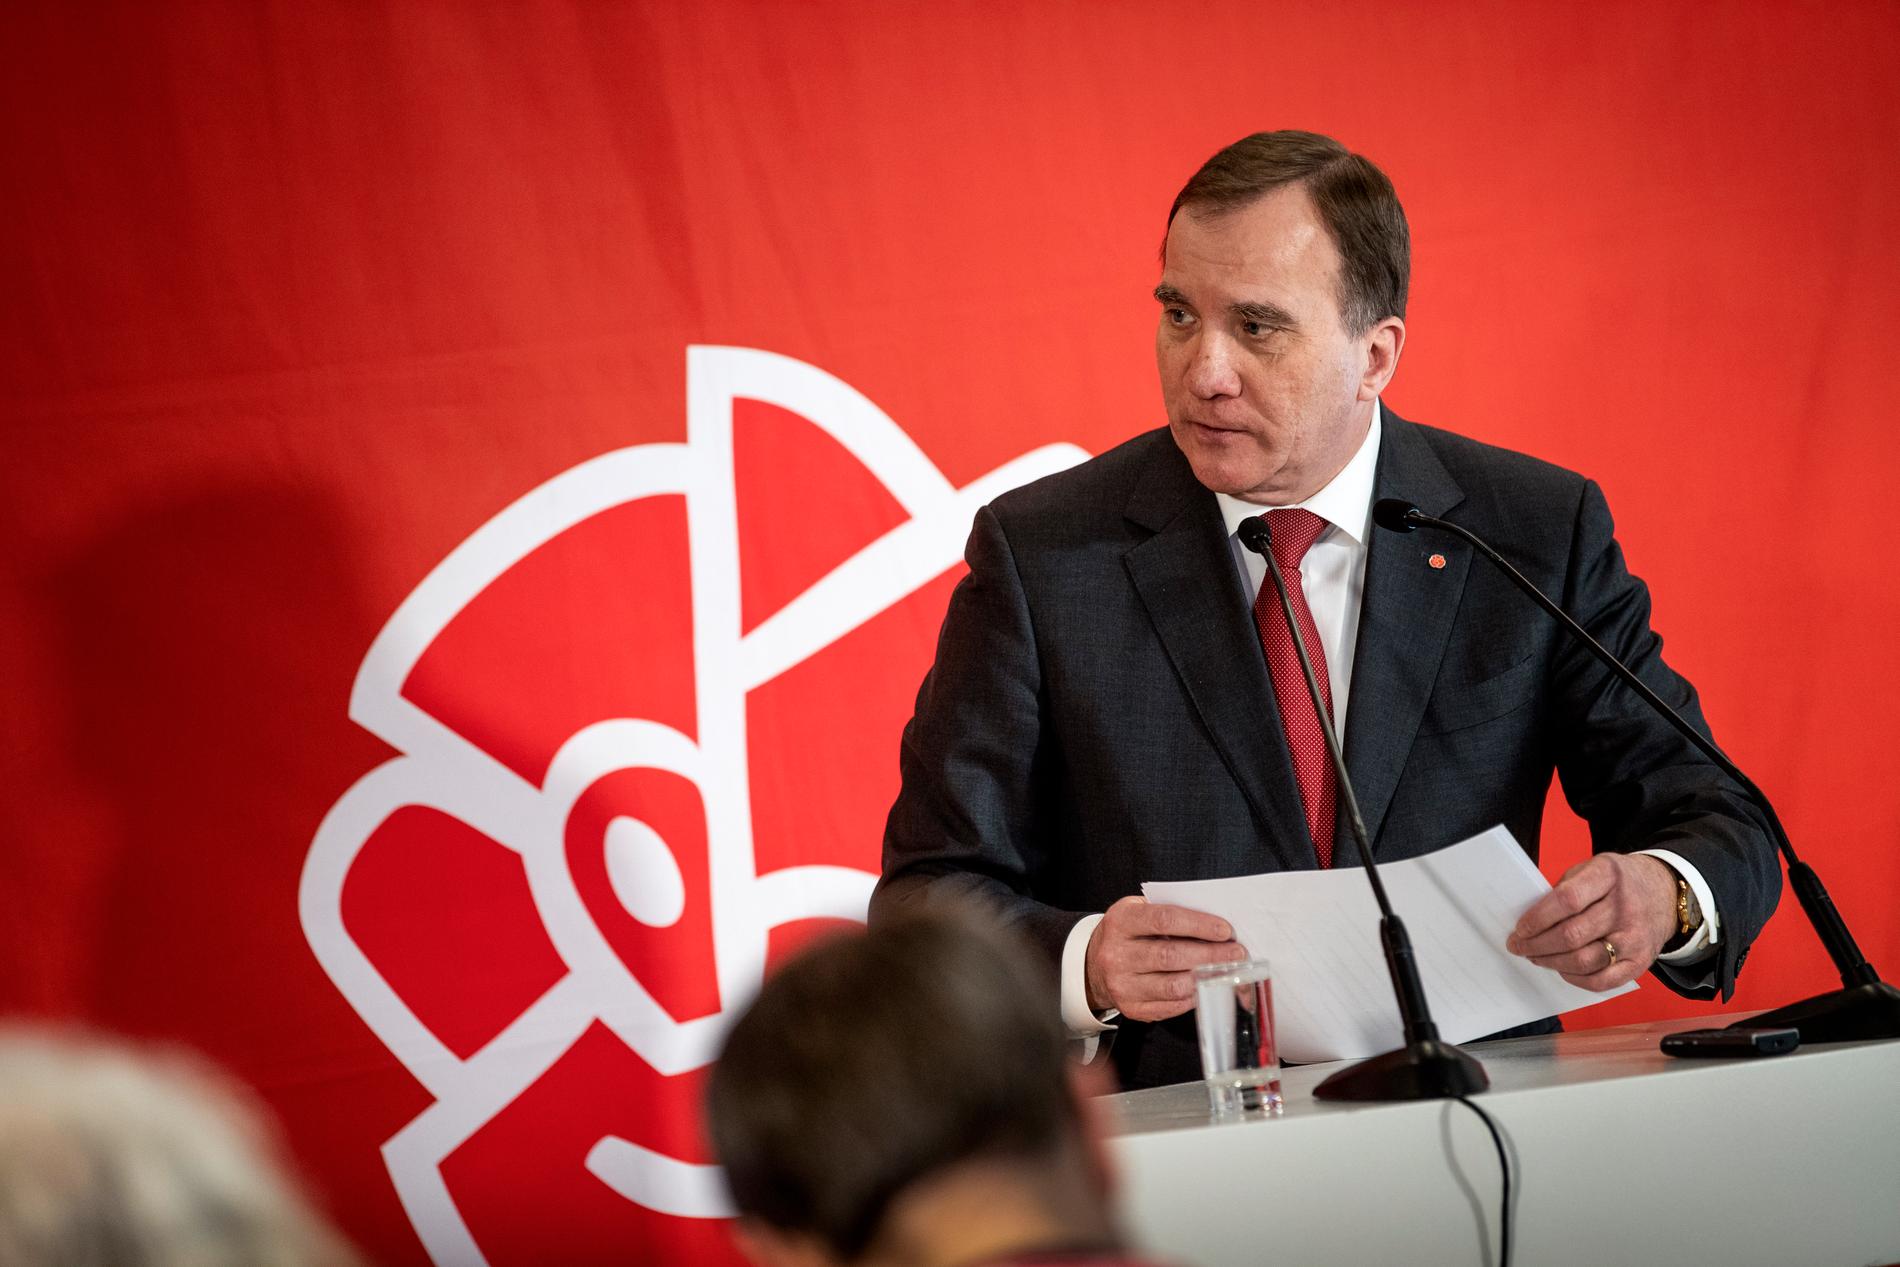 Stödet för Socialdemokraterna sjunker enligt Sifos undersökning. På bilden syns partiledare och statsminister Stefan Löfven. Arkivbild.